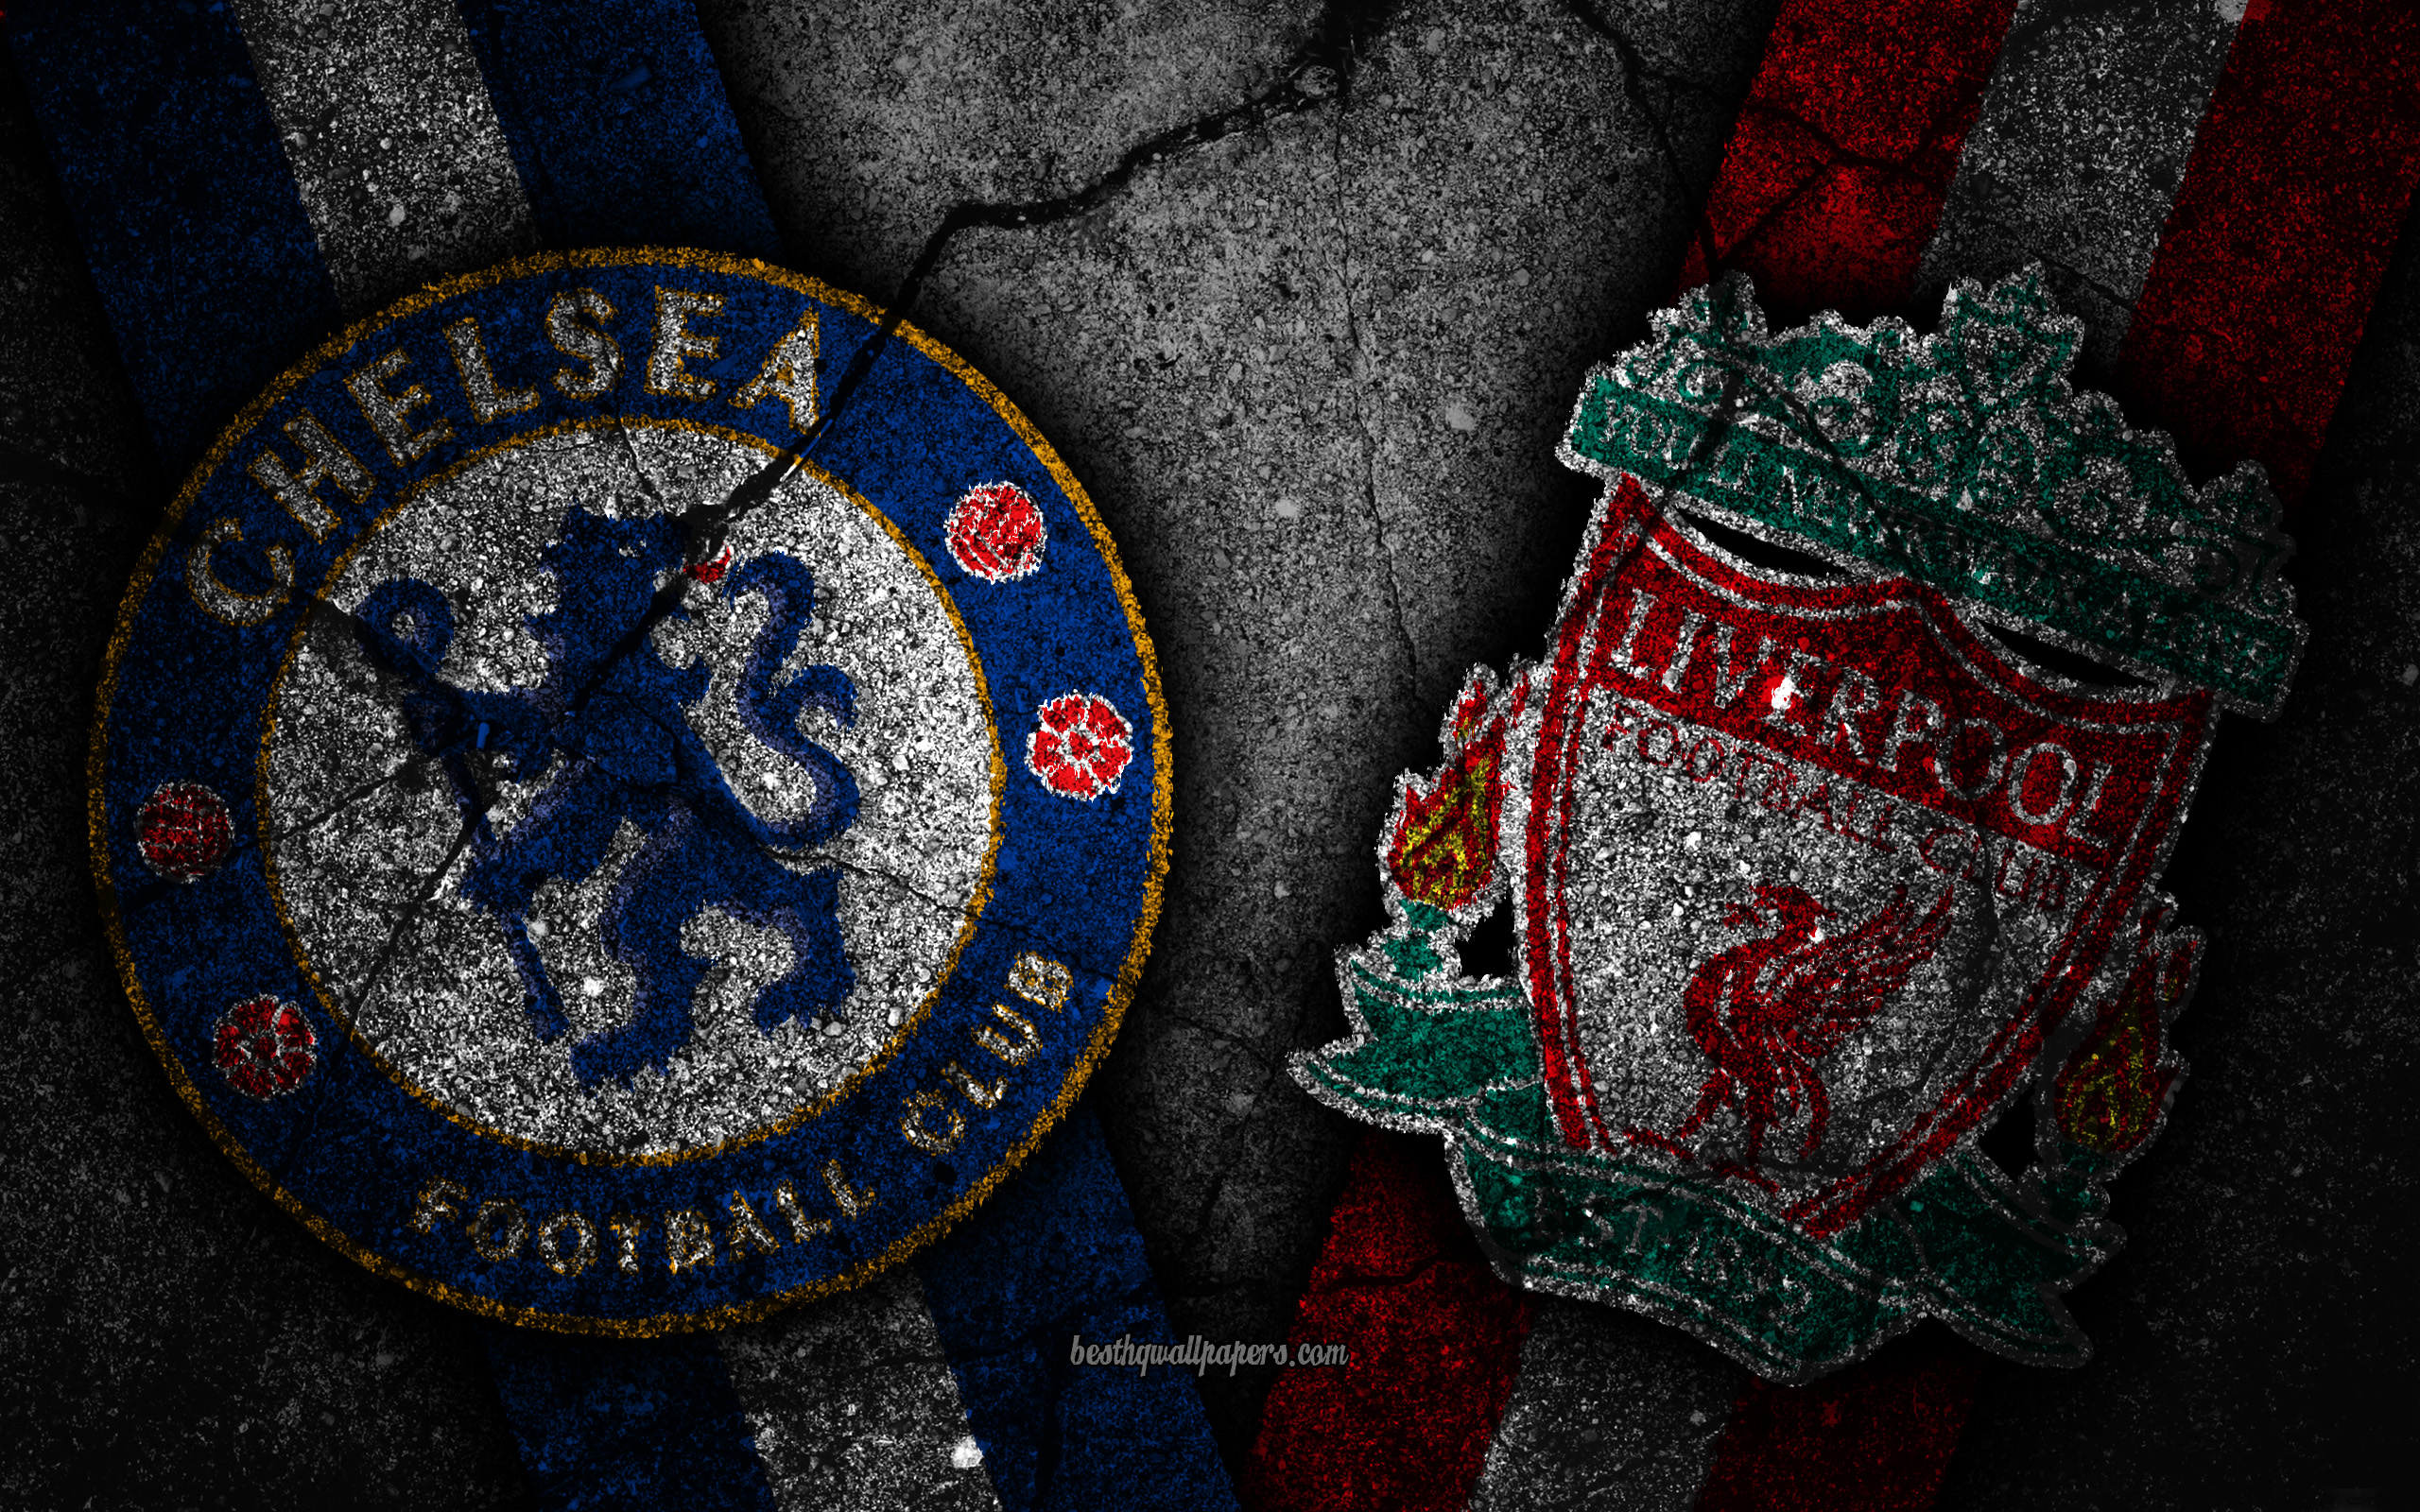 Download wallpaper Chelsea vs Liverpool, Round Premier League